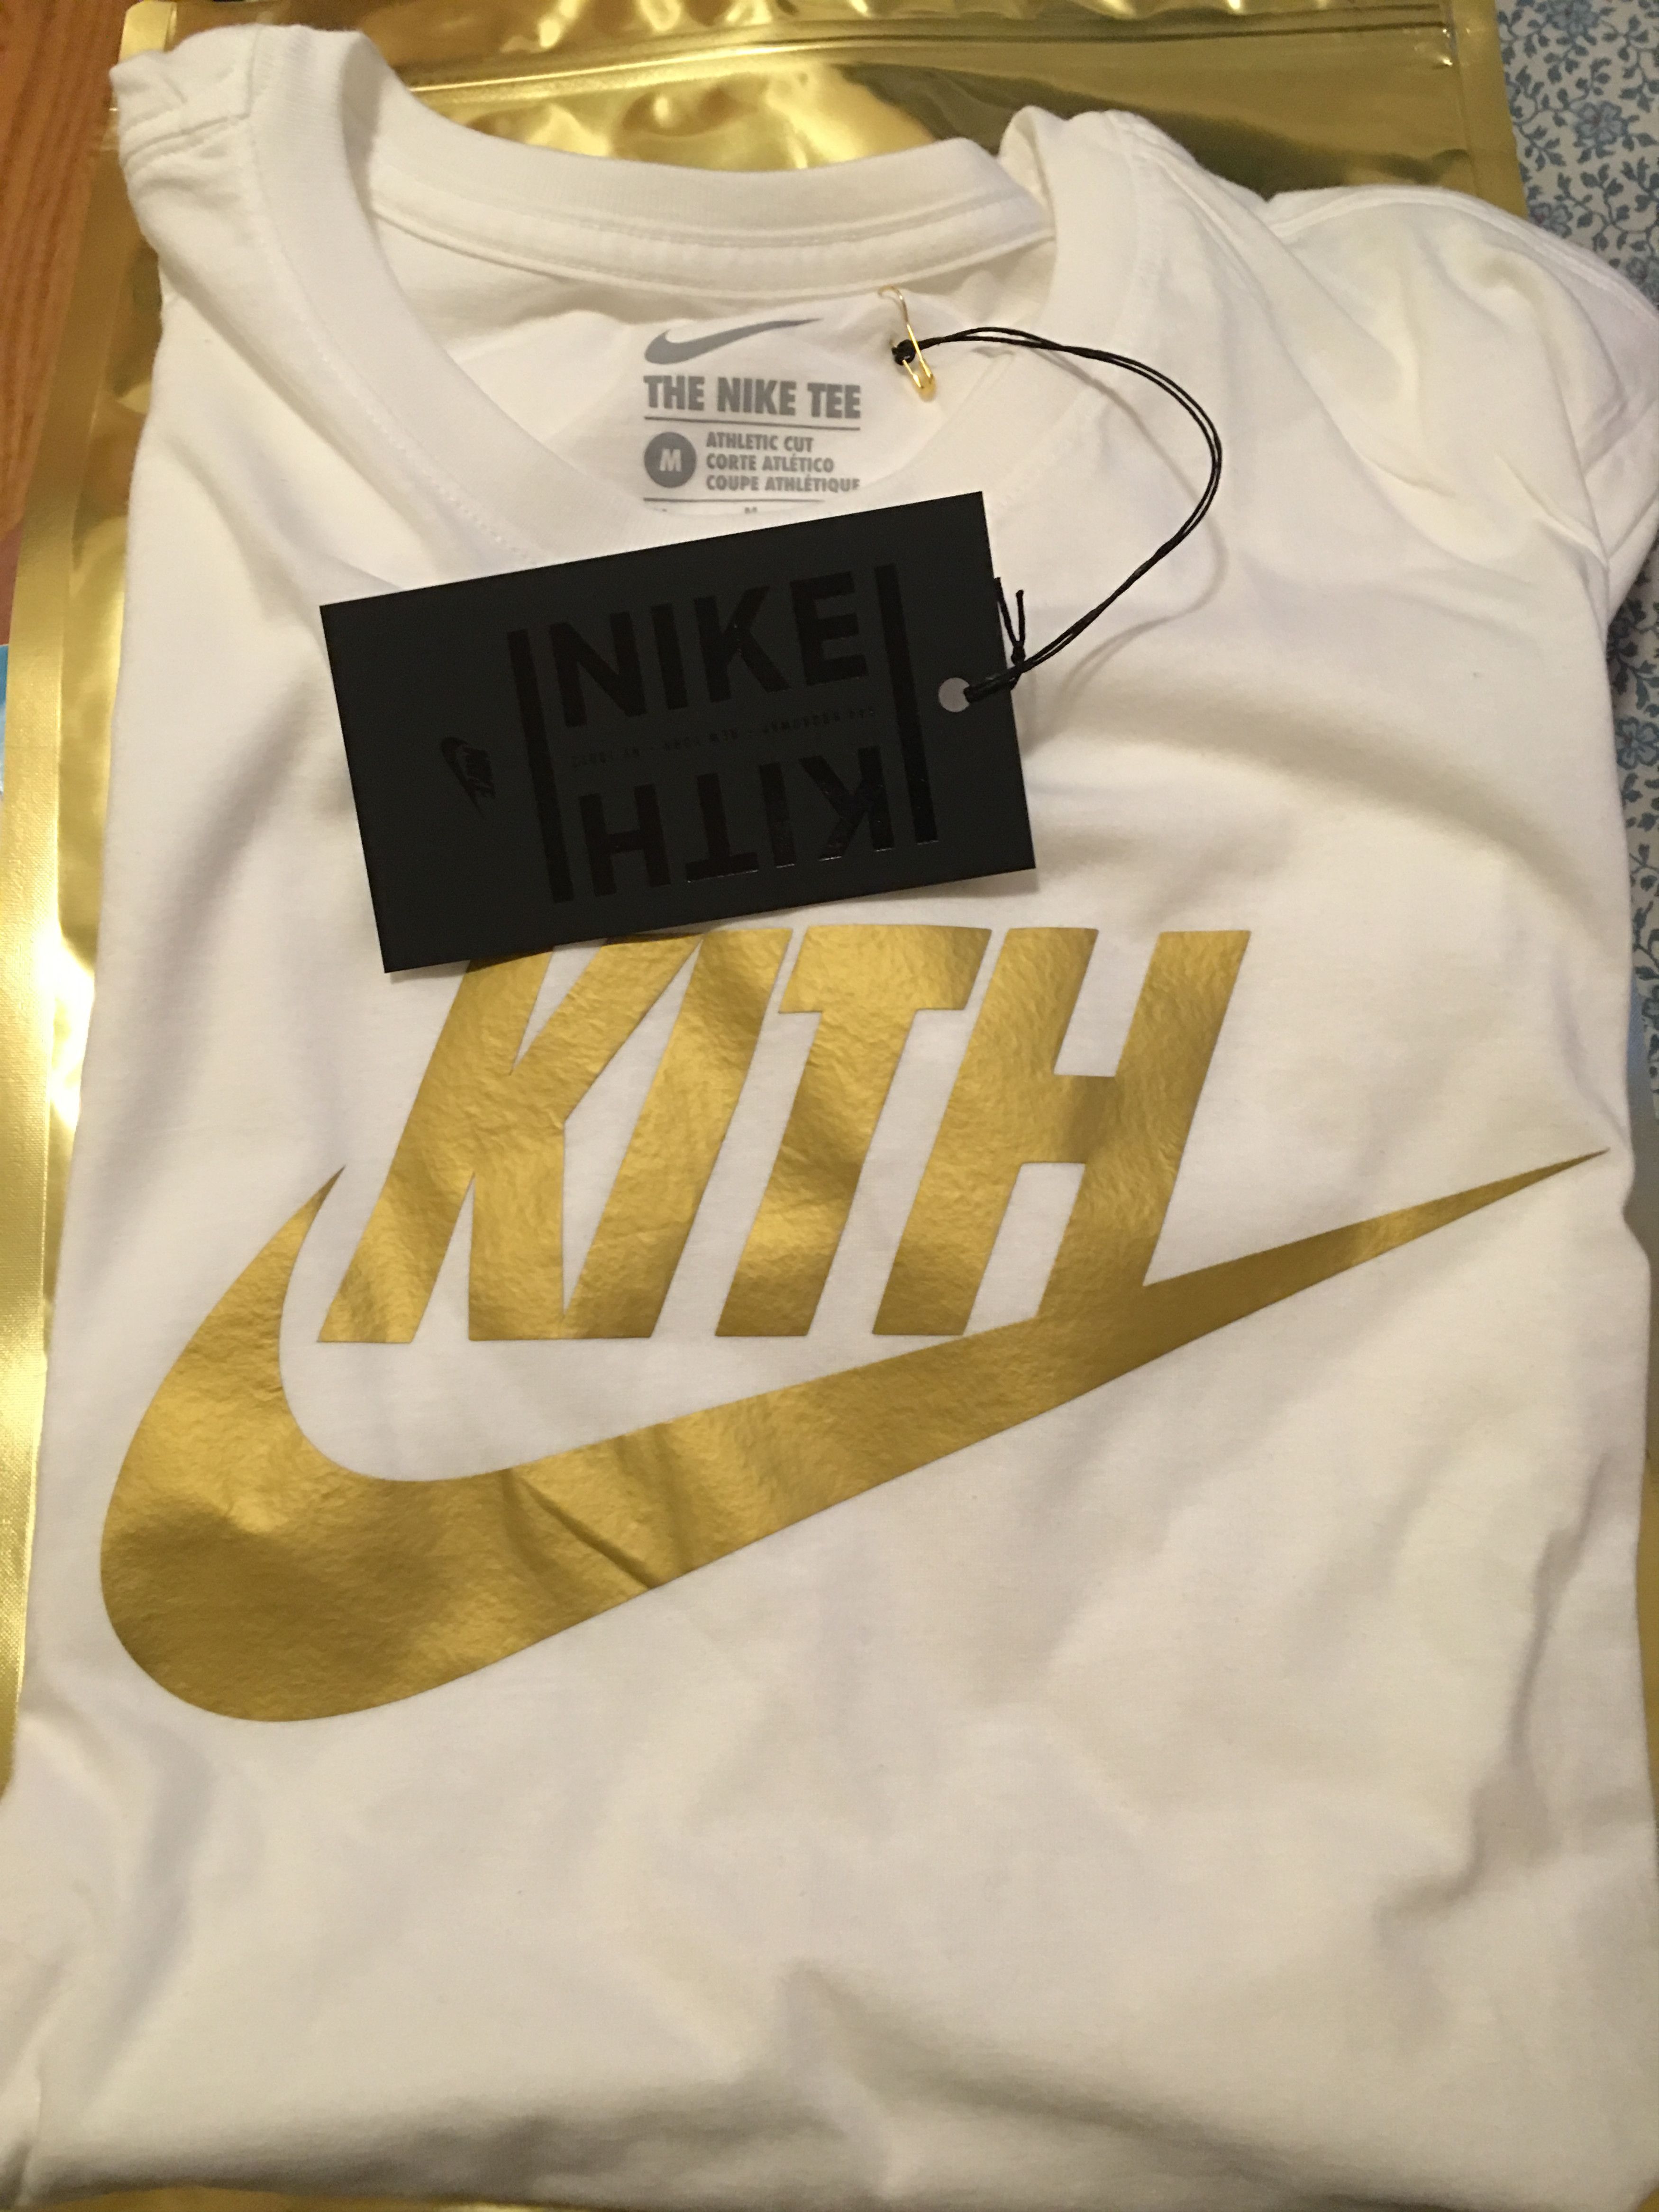 Nike Kith X Nike White Gold Swoosh Tee Size US M / EU 48-50 / 2 - 6 Preview